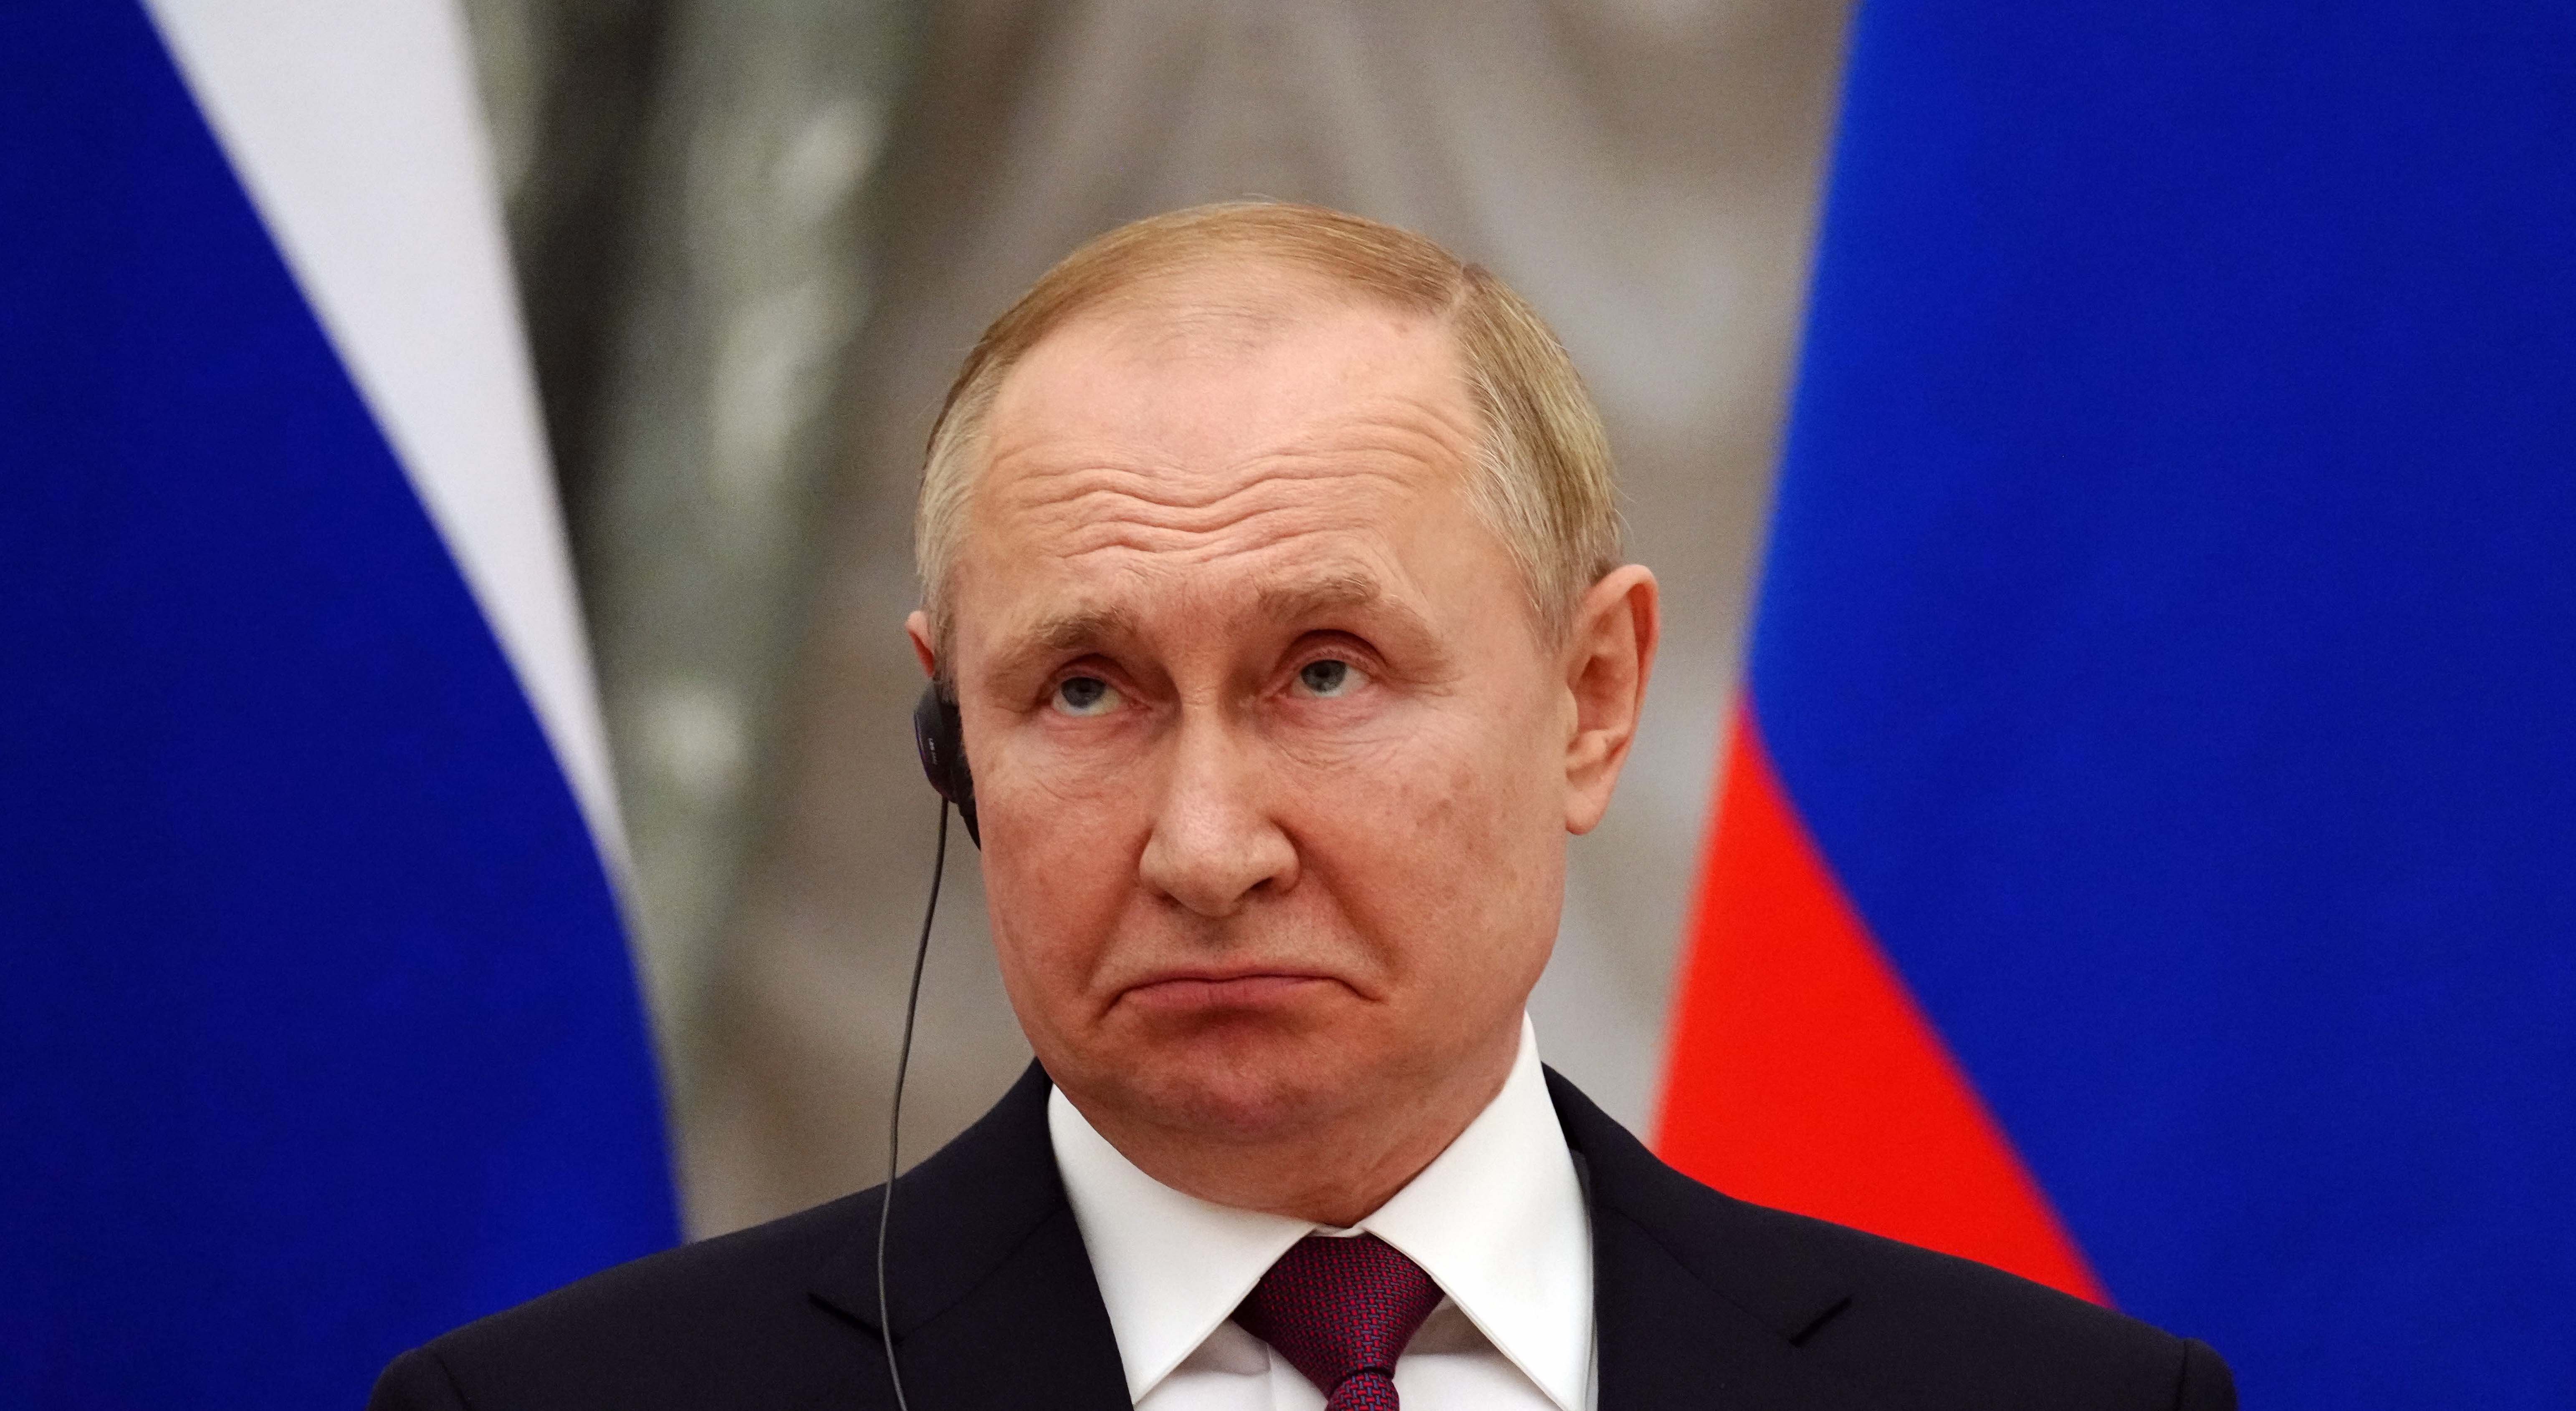 Gas russo Putin Risoluzione Onu condanna Russia Ritiro truppe russe, Vladimir Putin